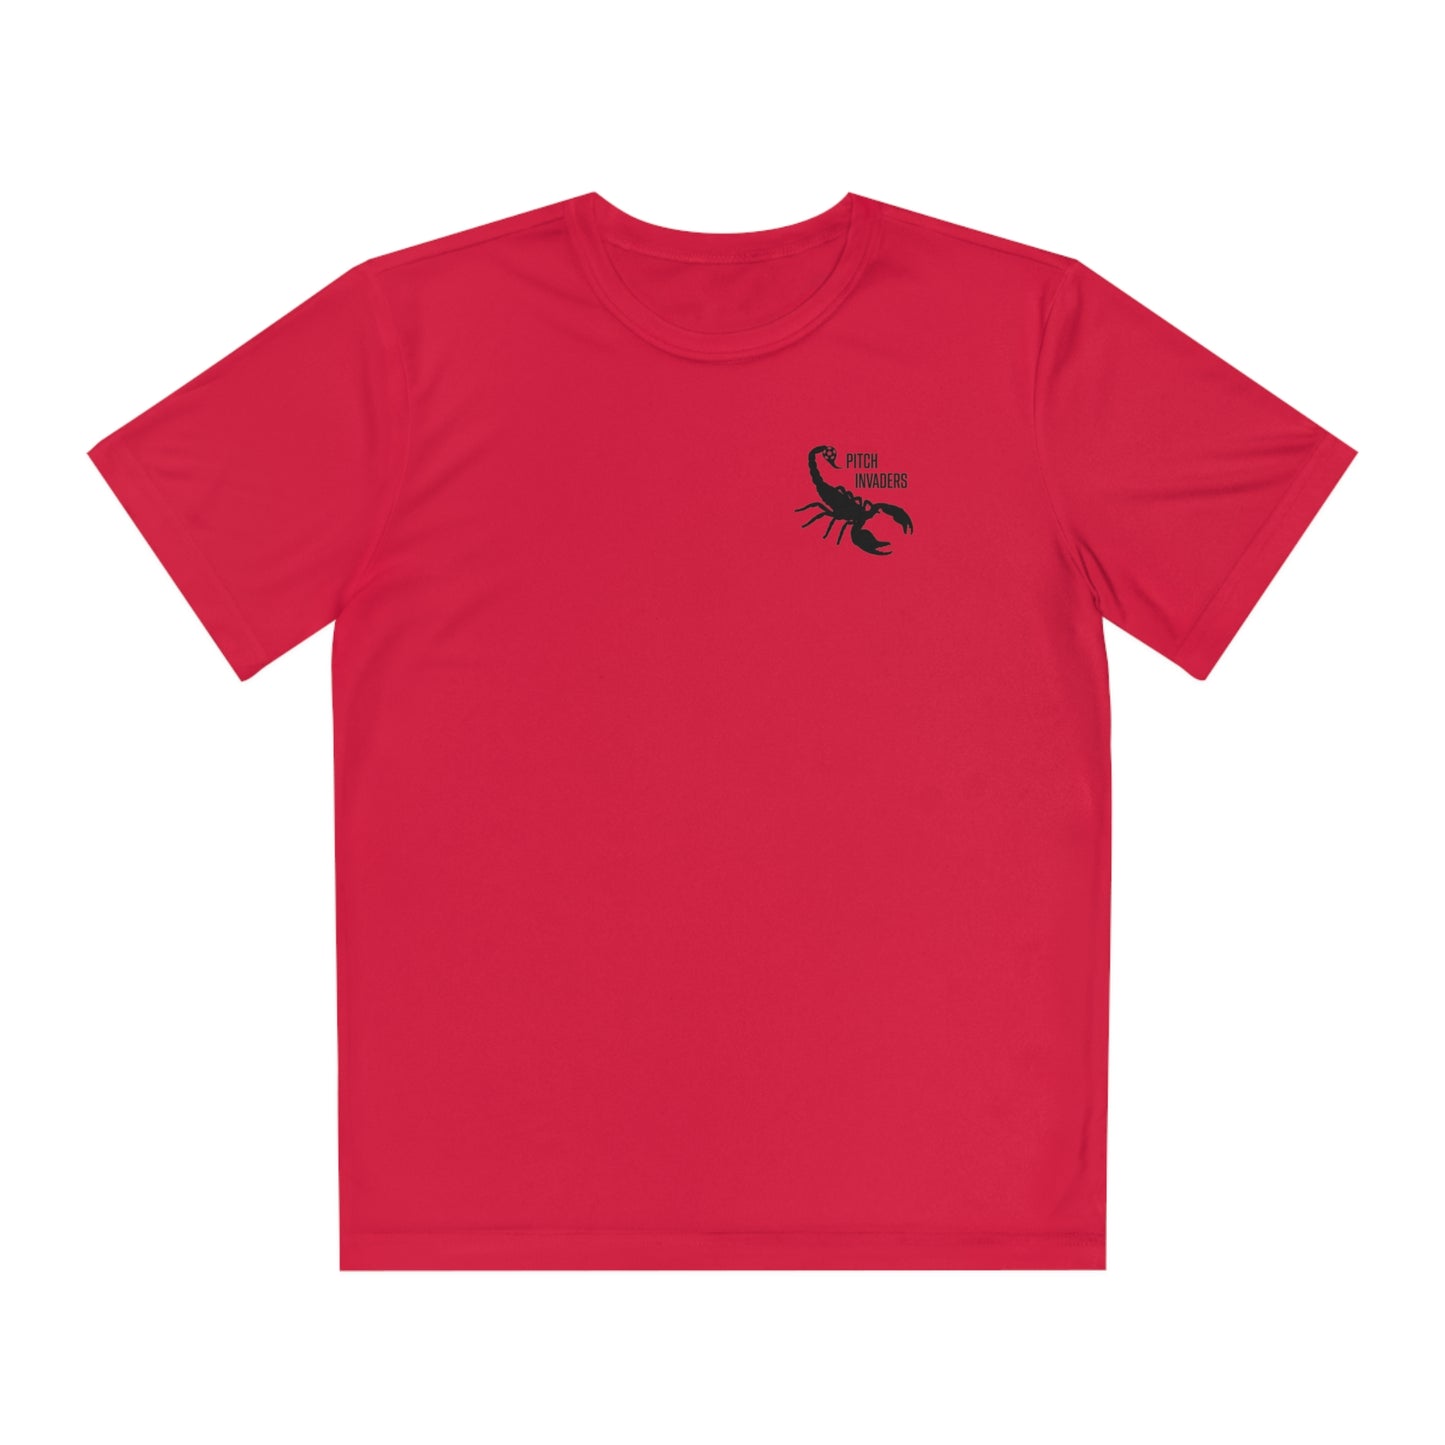 BACKLINE BLOCKADE Youth Athletic T-Shirt (Unisex)